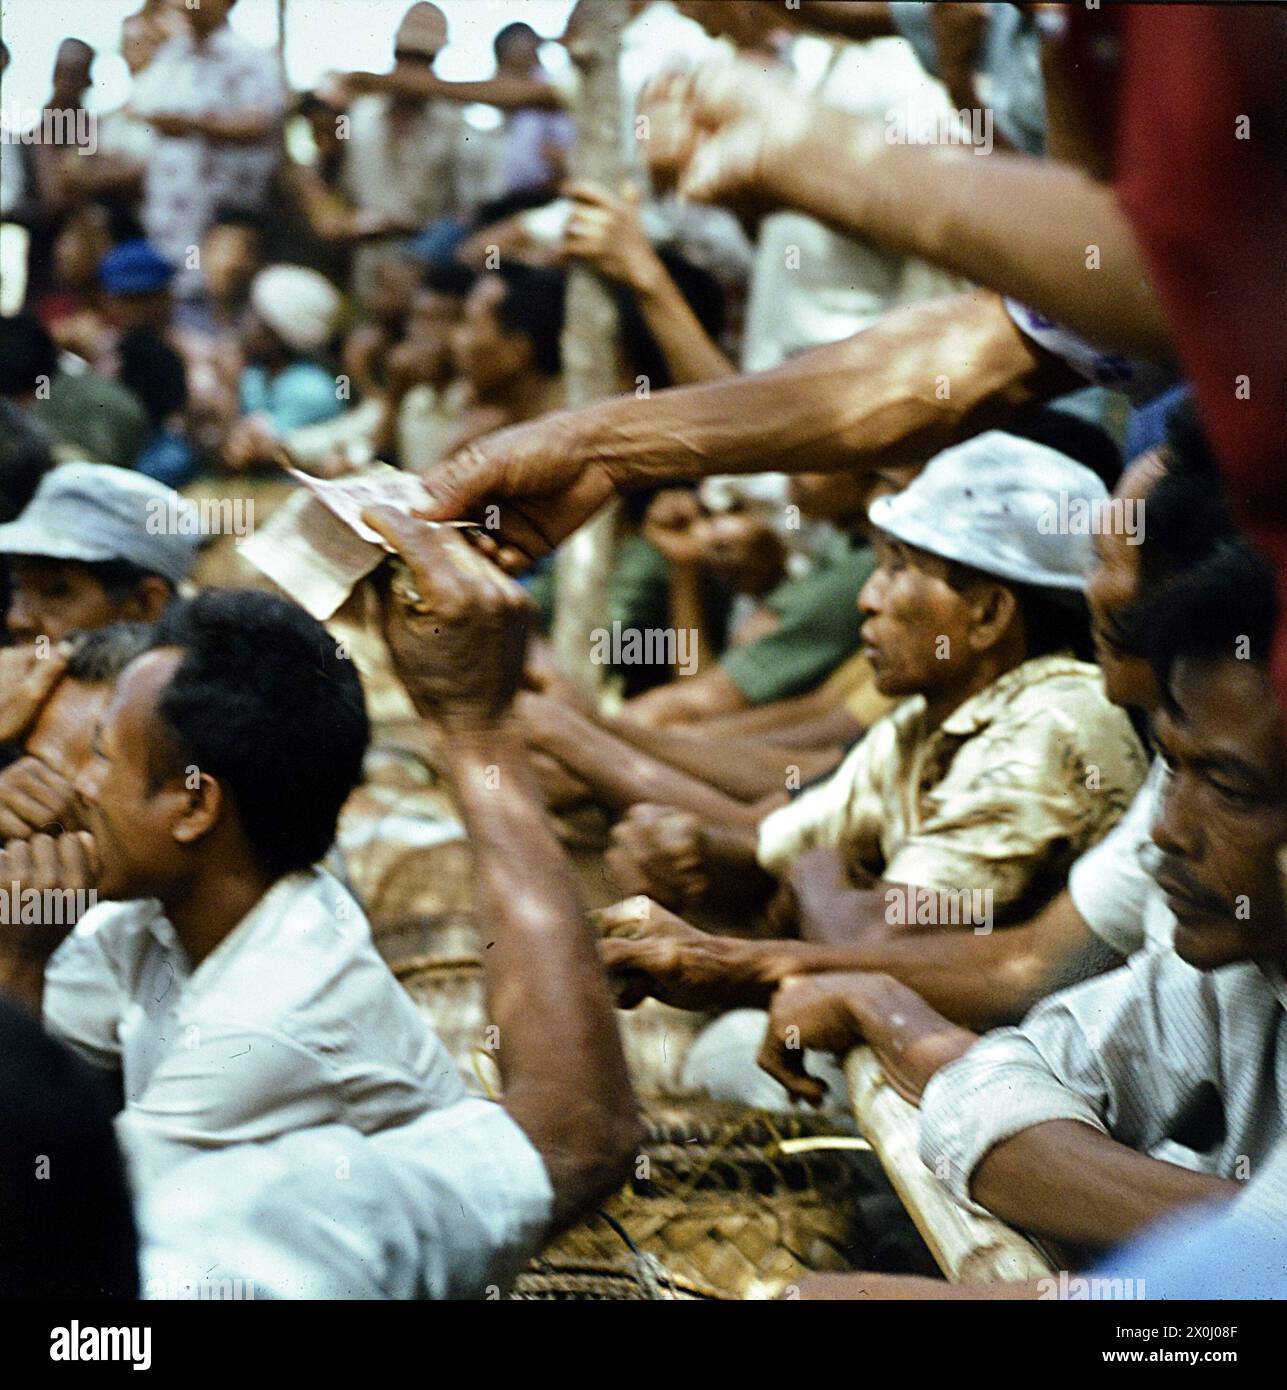 Ein Zuschauer zahlt seinen Wetteinsatz bei einem Hahnenkampf auf Bali in Indonesia. Weitere Zuschauer stehen und sitzen dicht gedrängt um den Kampf zu sehen. (Aufnahmedatum: 01.08.1974-31.08.1974) Foto Stock